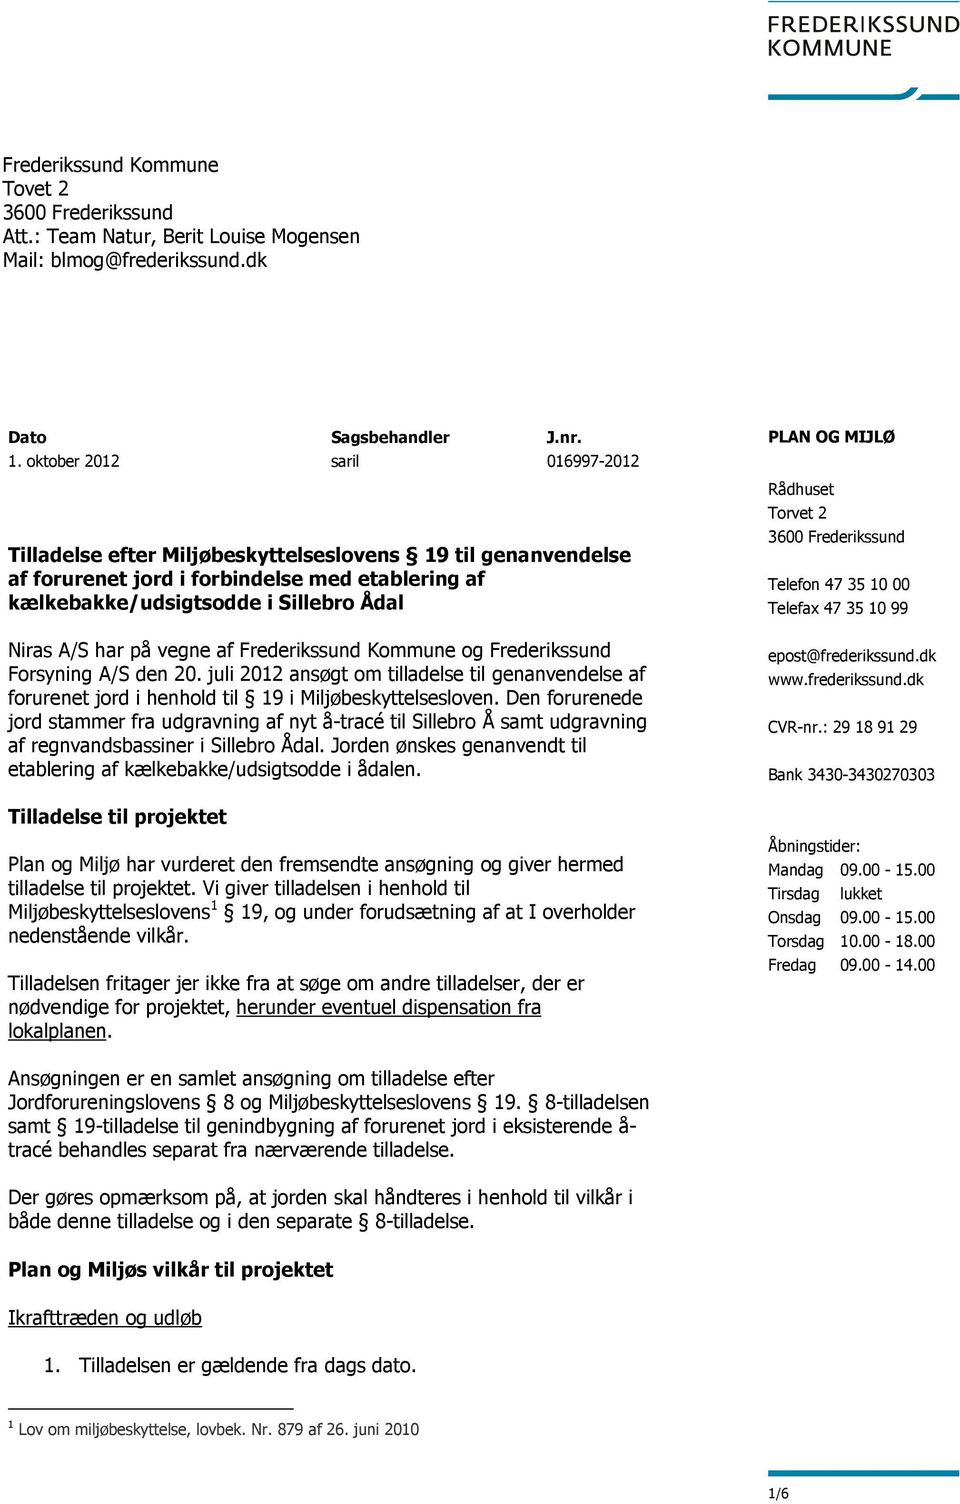 vegne af Frederikssund Kommune og Frederikssund Forsyning A/S den 20. juli 2012 ansøgt om tilladelse til genanvendelse af forurenet jord i henhold til 19 i Miljøbeskyttelsesloven.